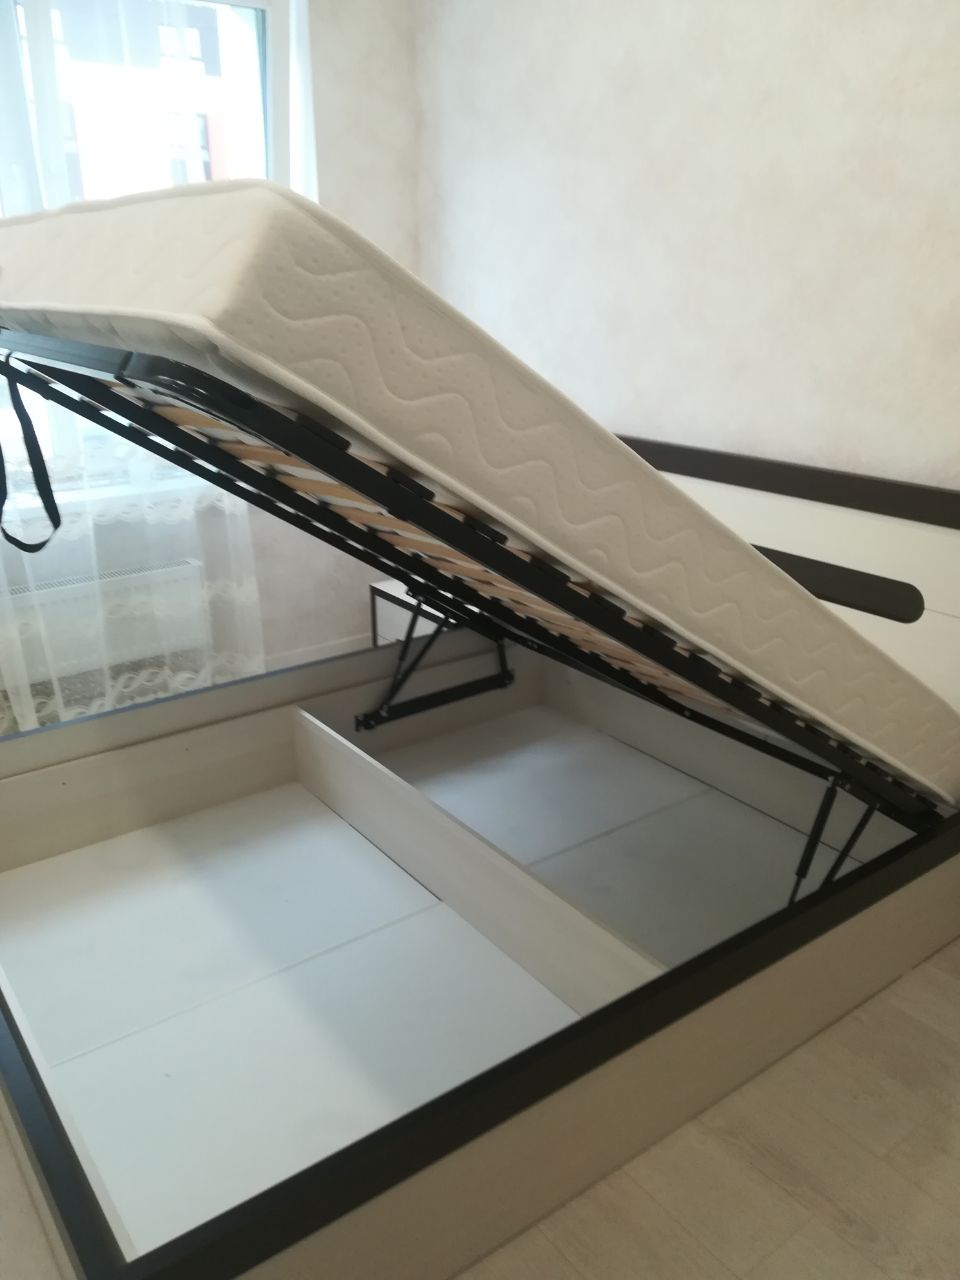 Двуспальная кровать "Альба" 180 х 190 с подъемным механизмом цвет дуб сантана